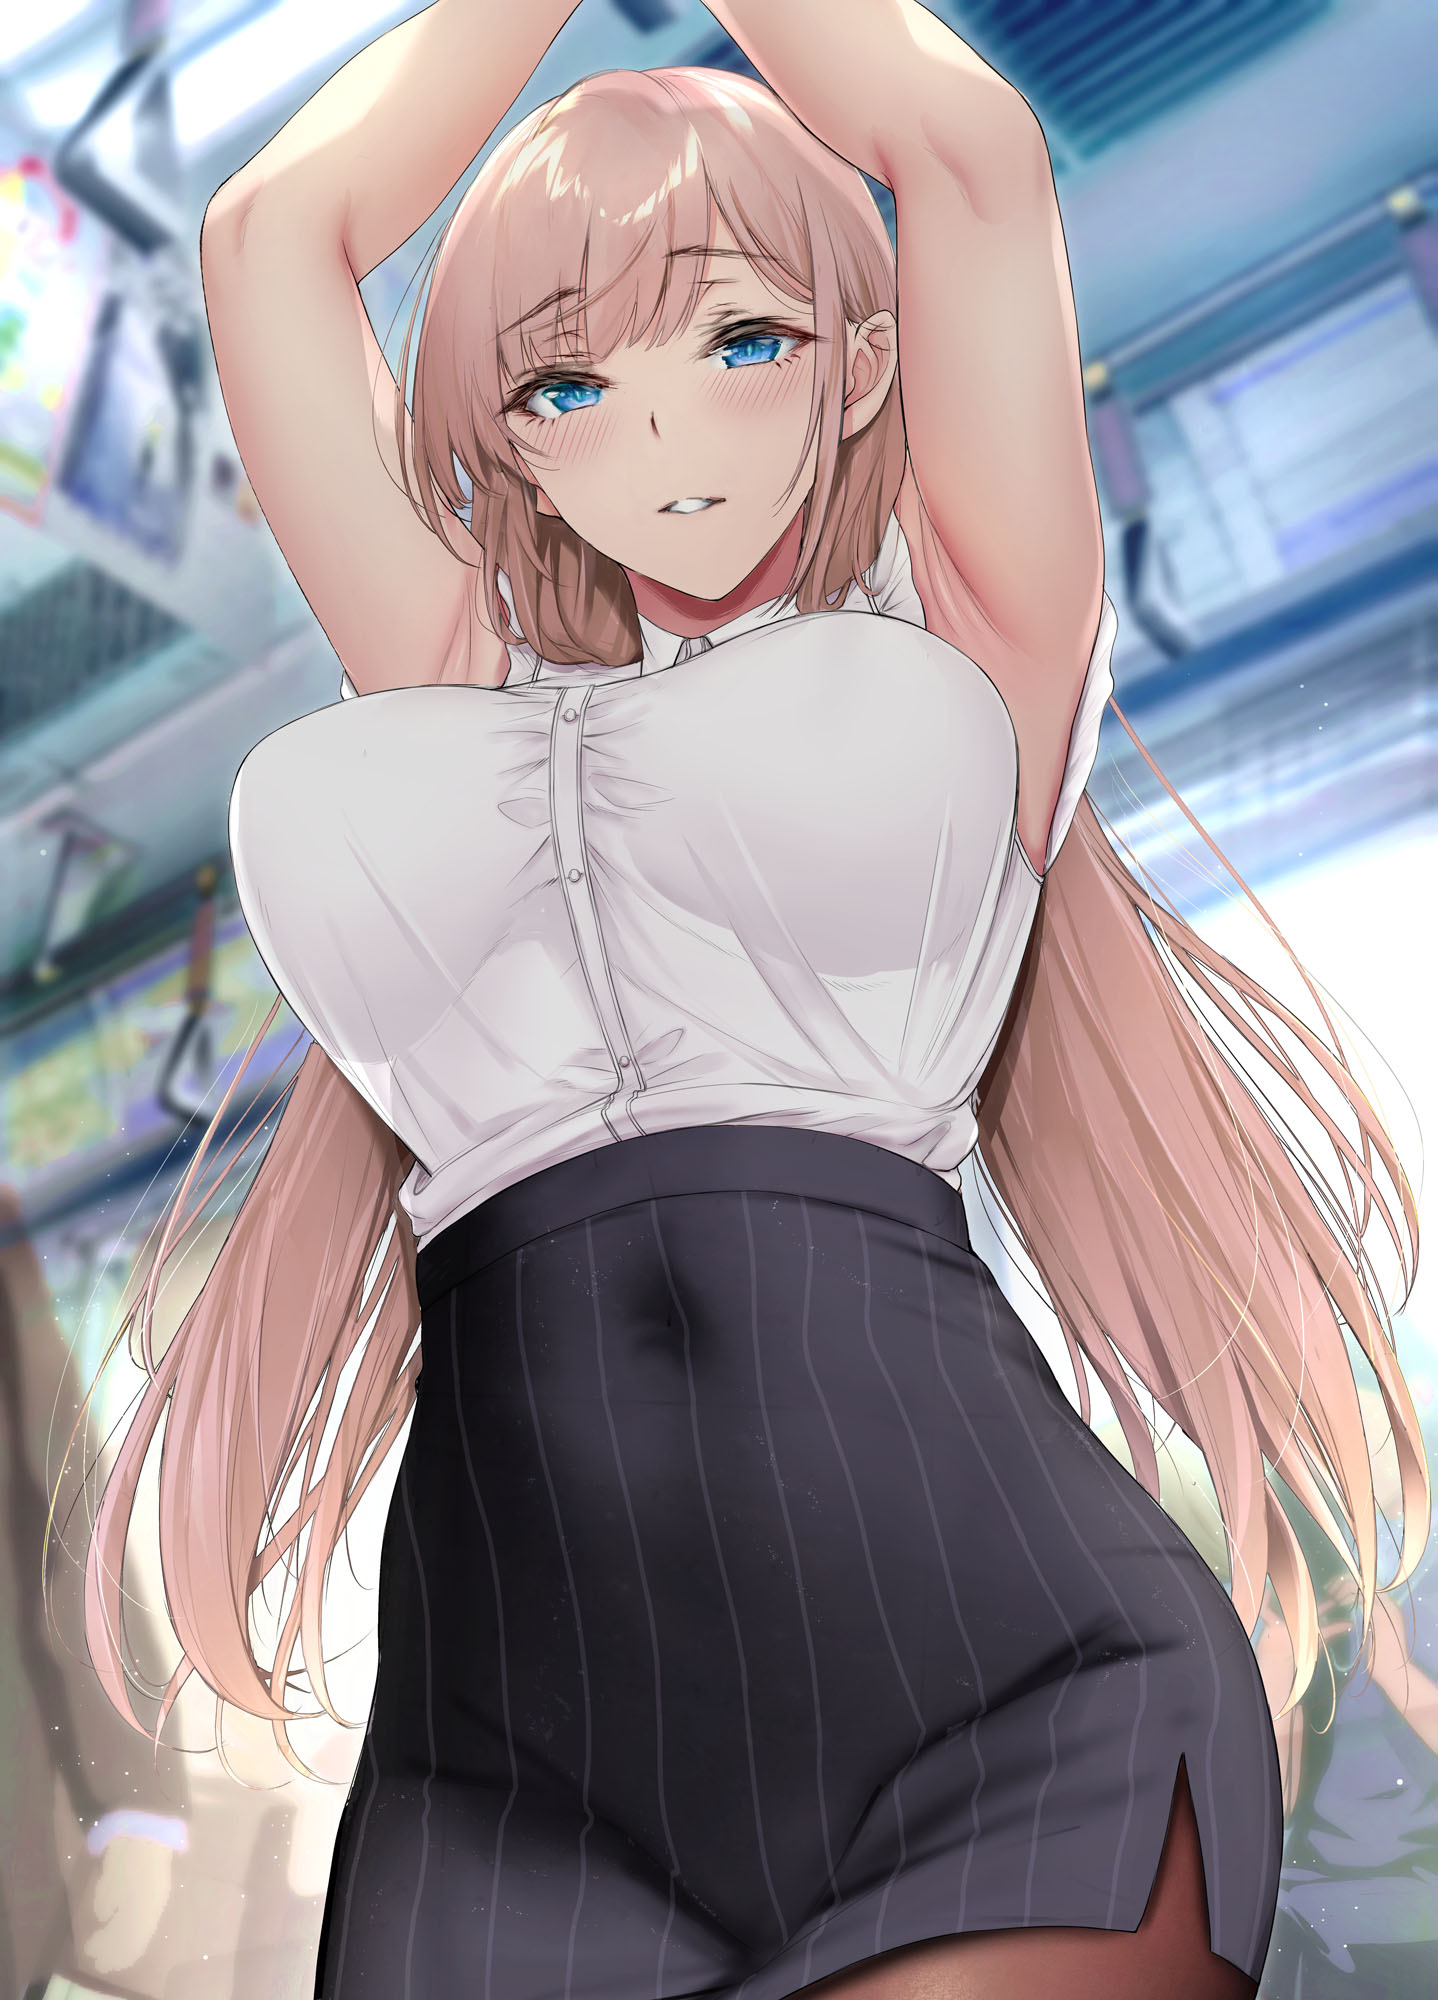 boobs, big boobs, arms up, long hair, looking at viewer, Gentsuki